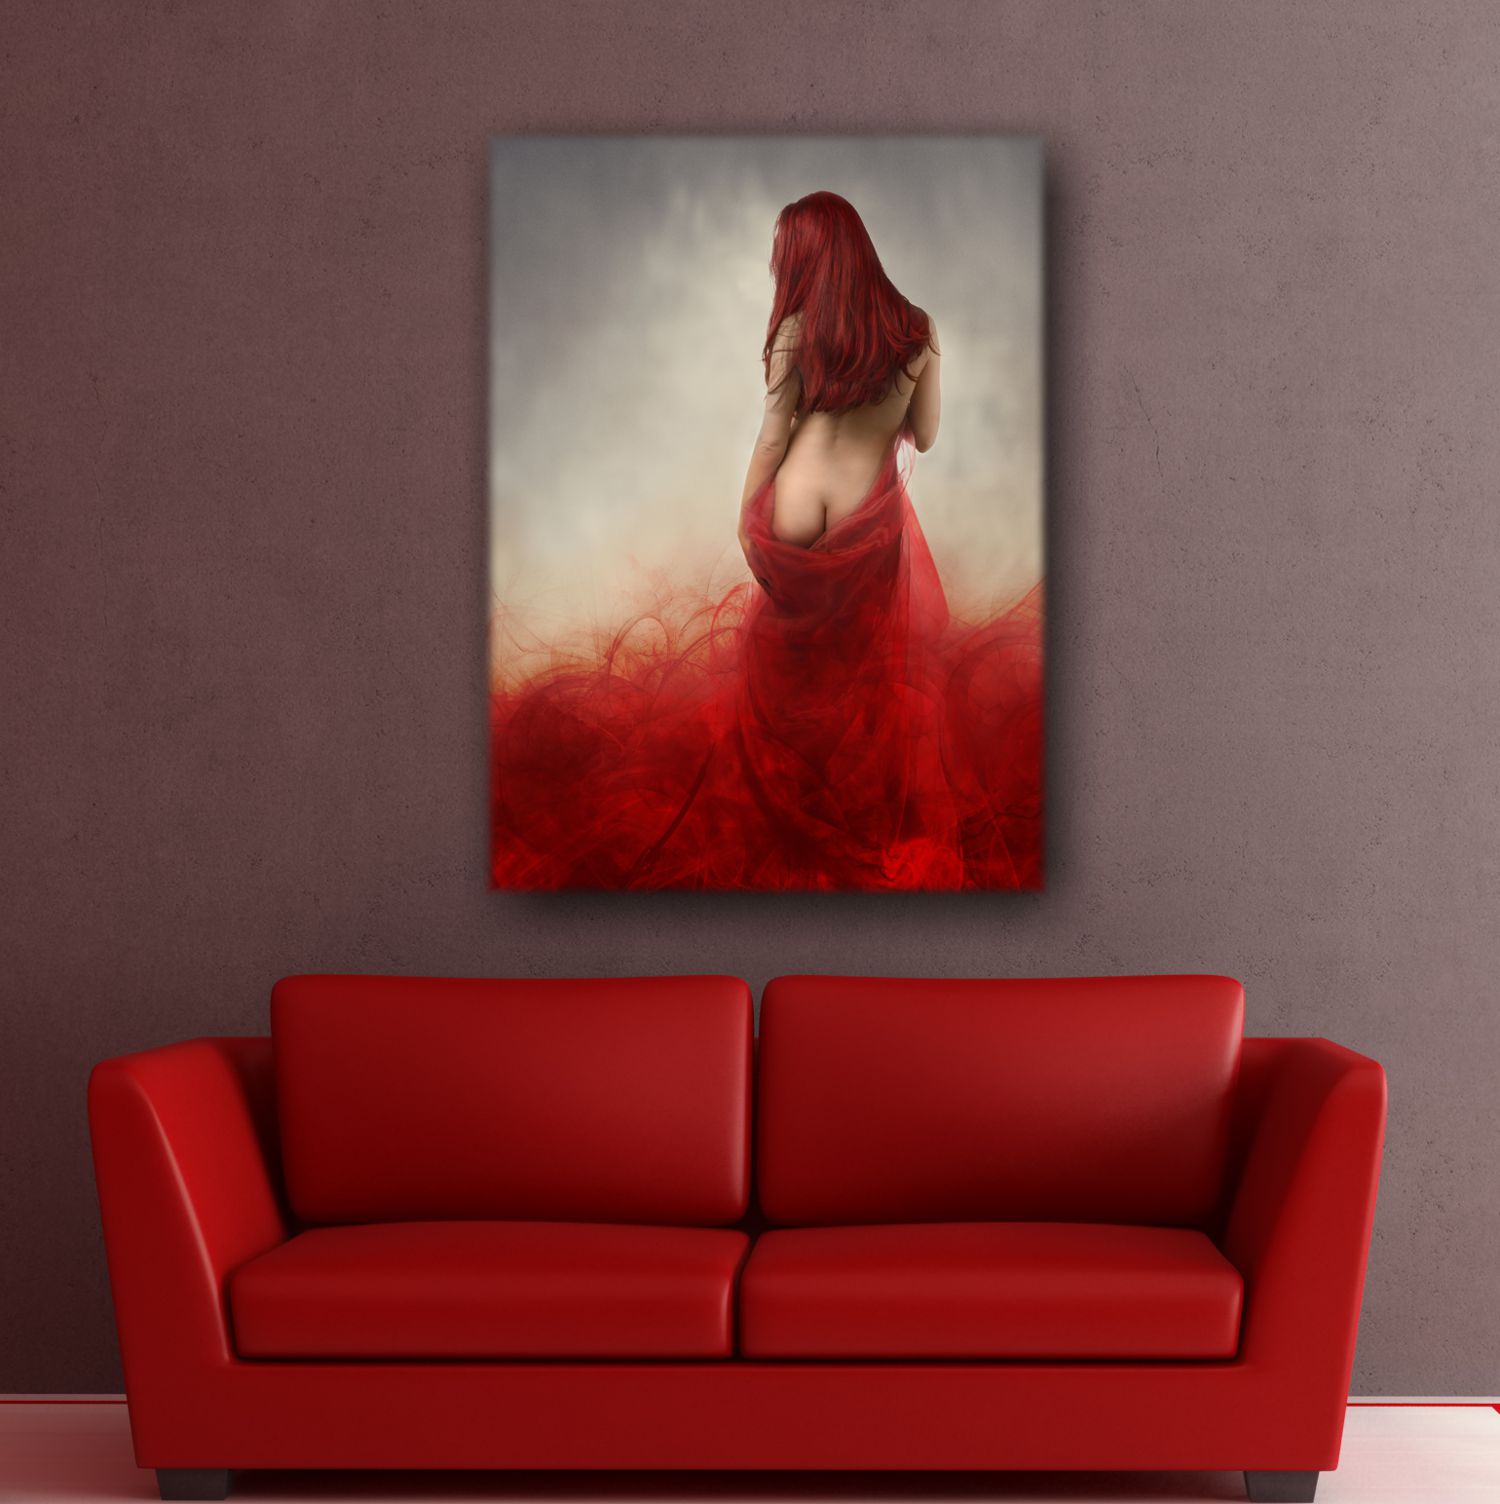 Leinwand Bild Erotik Lady in red